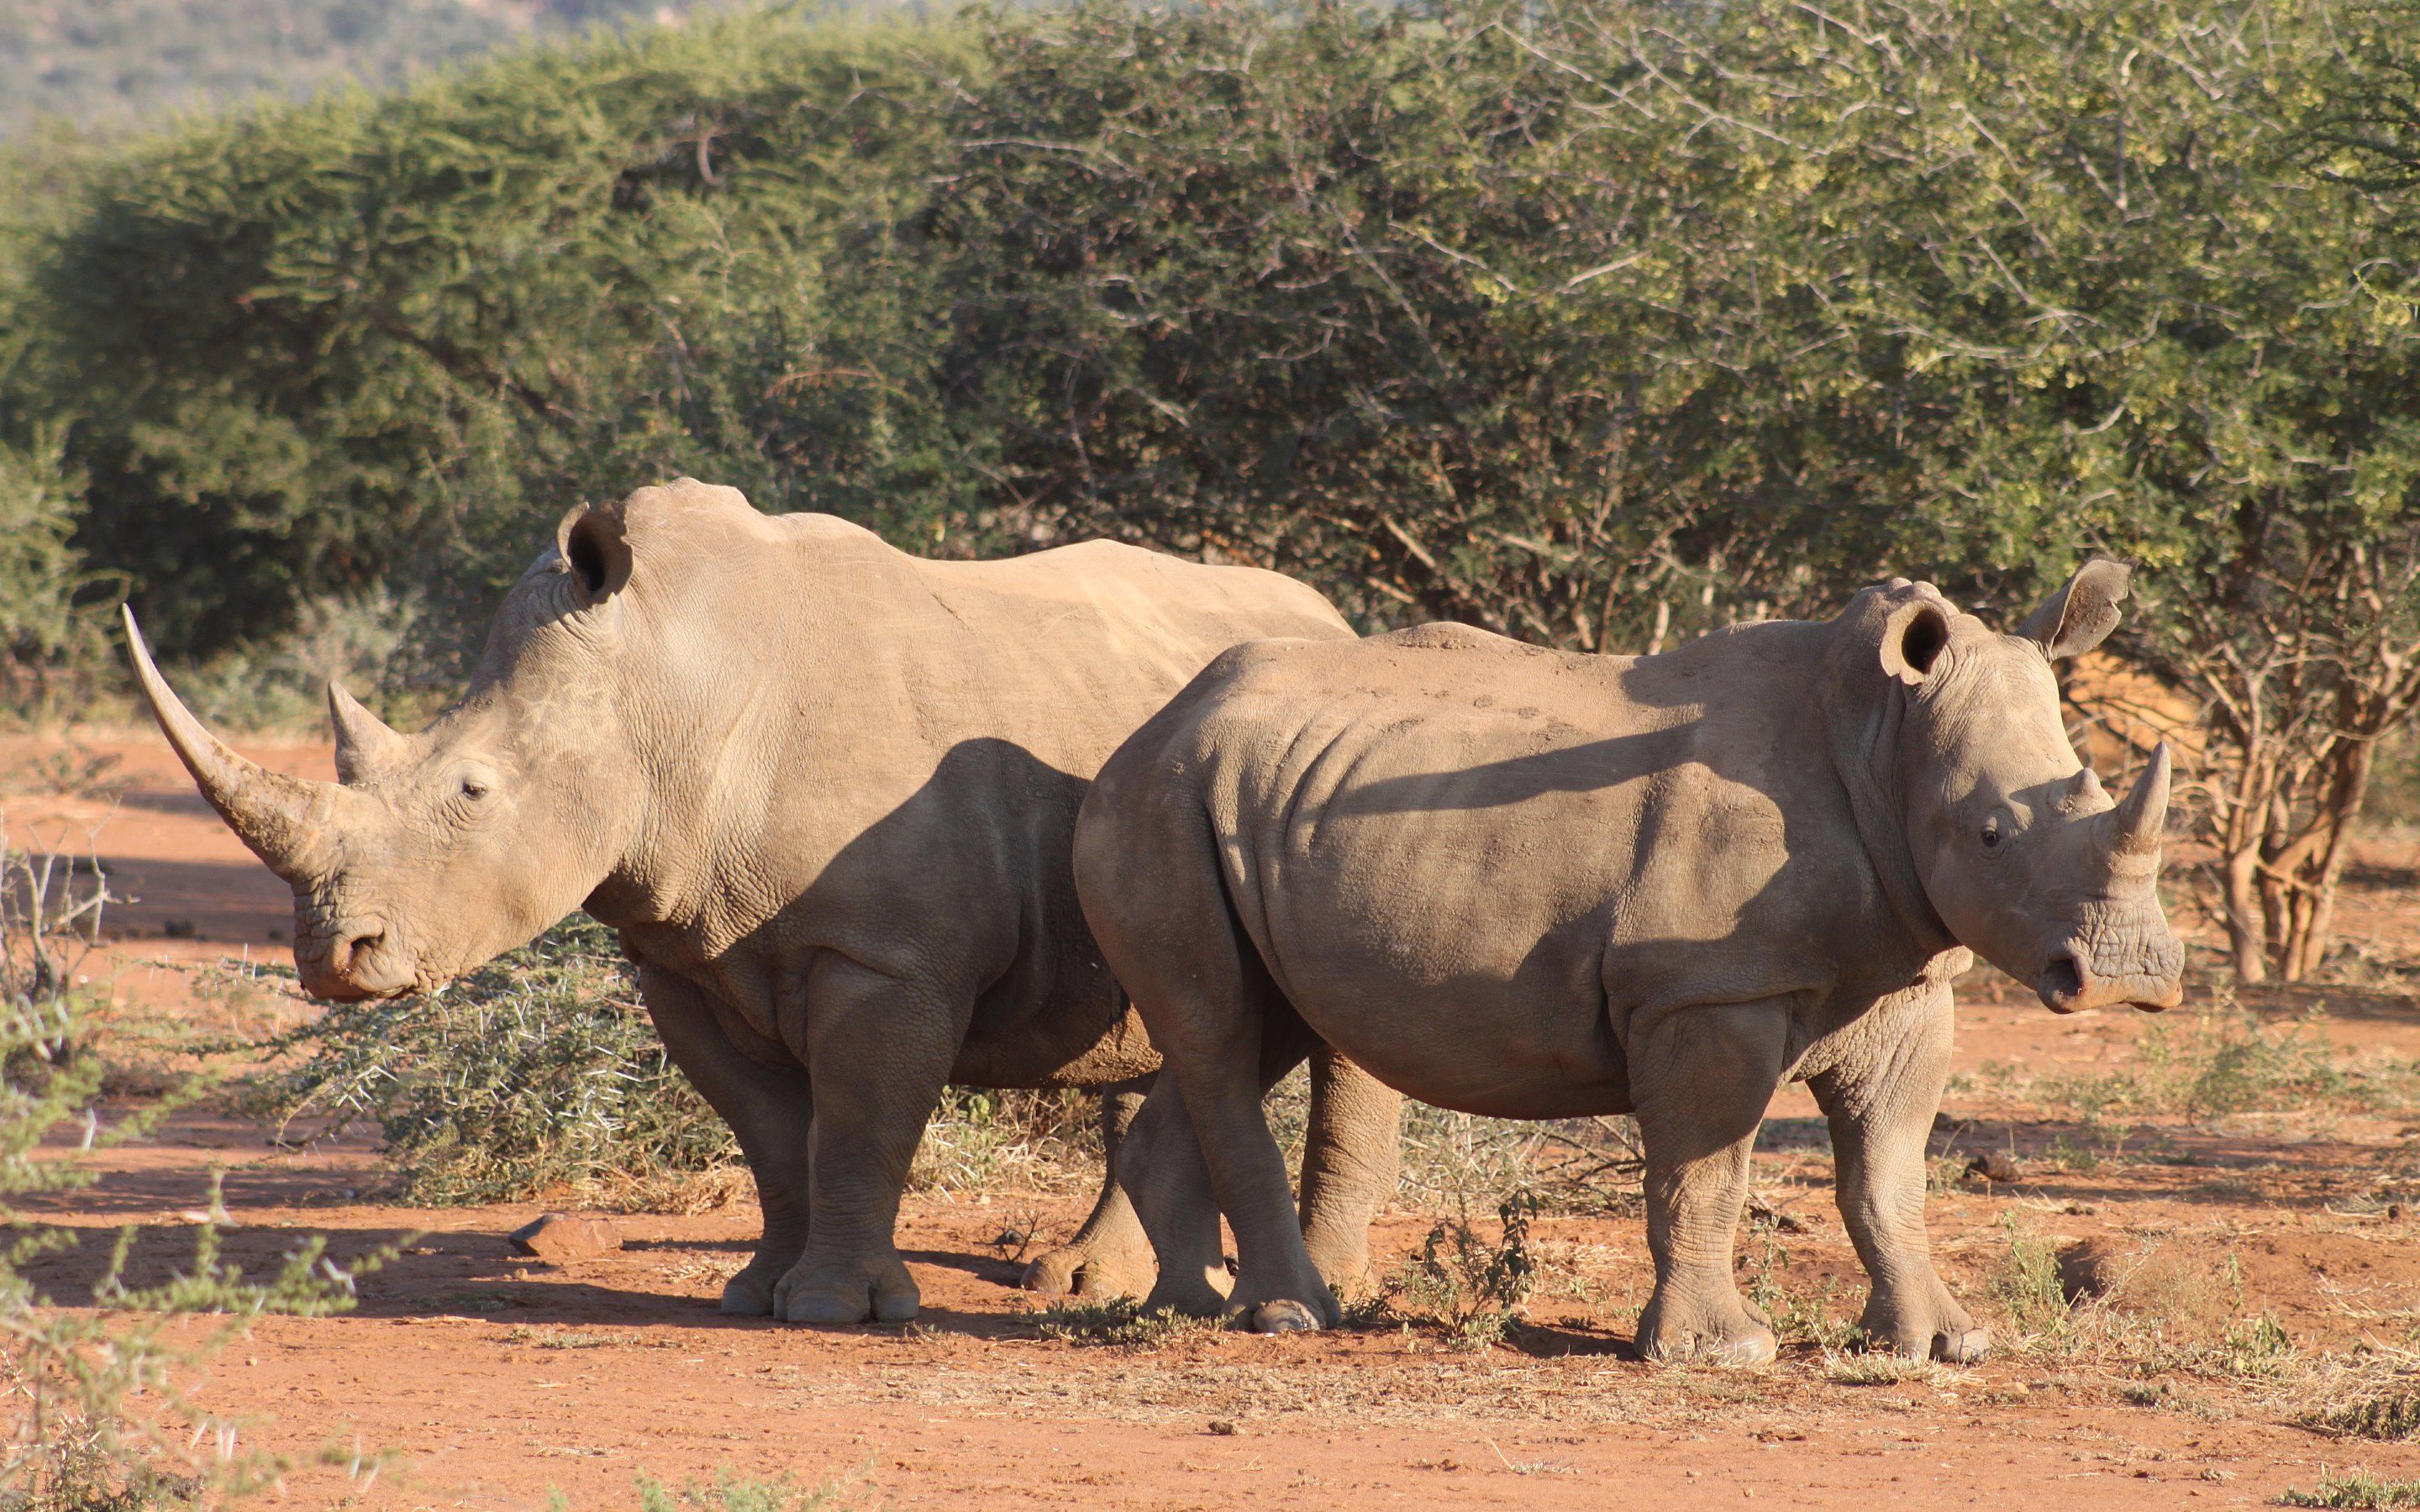 Rhinoceros Wallpaper Animal Spot